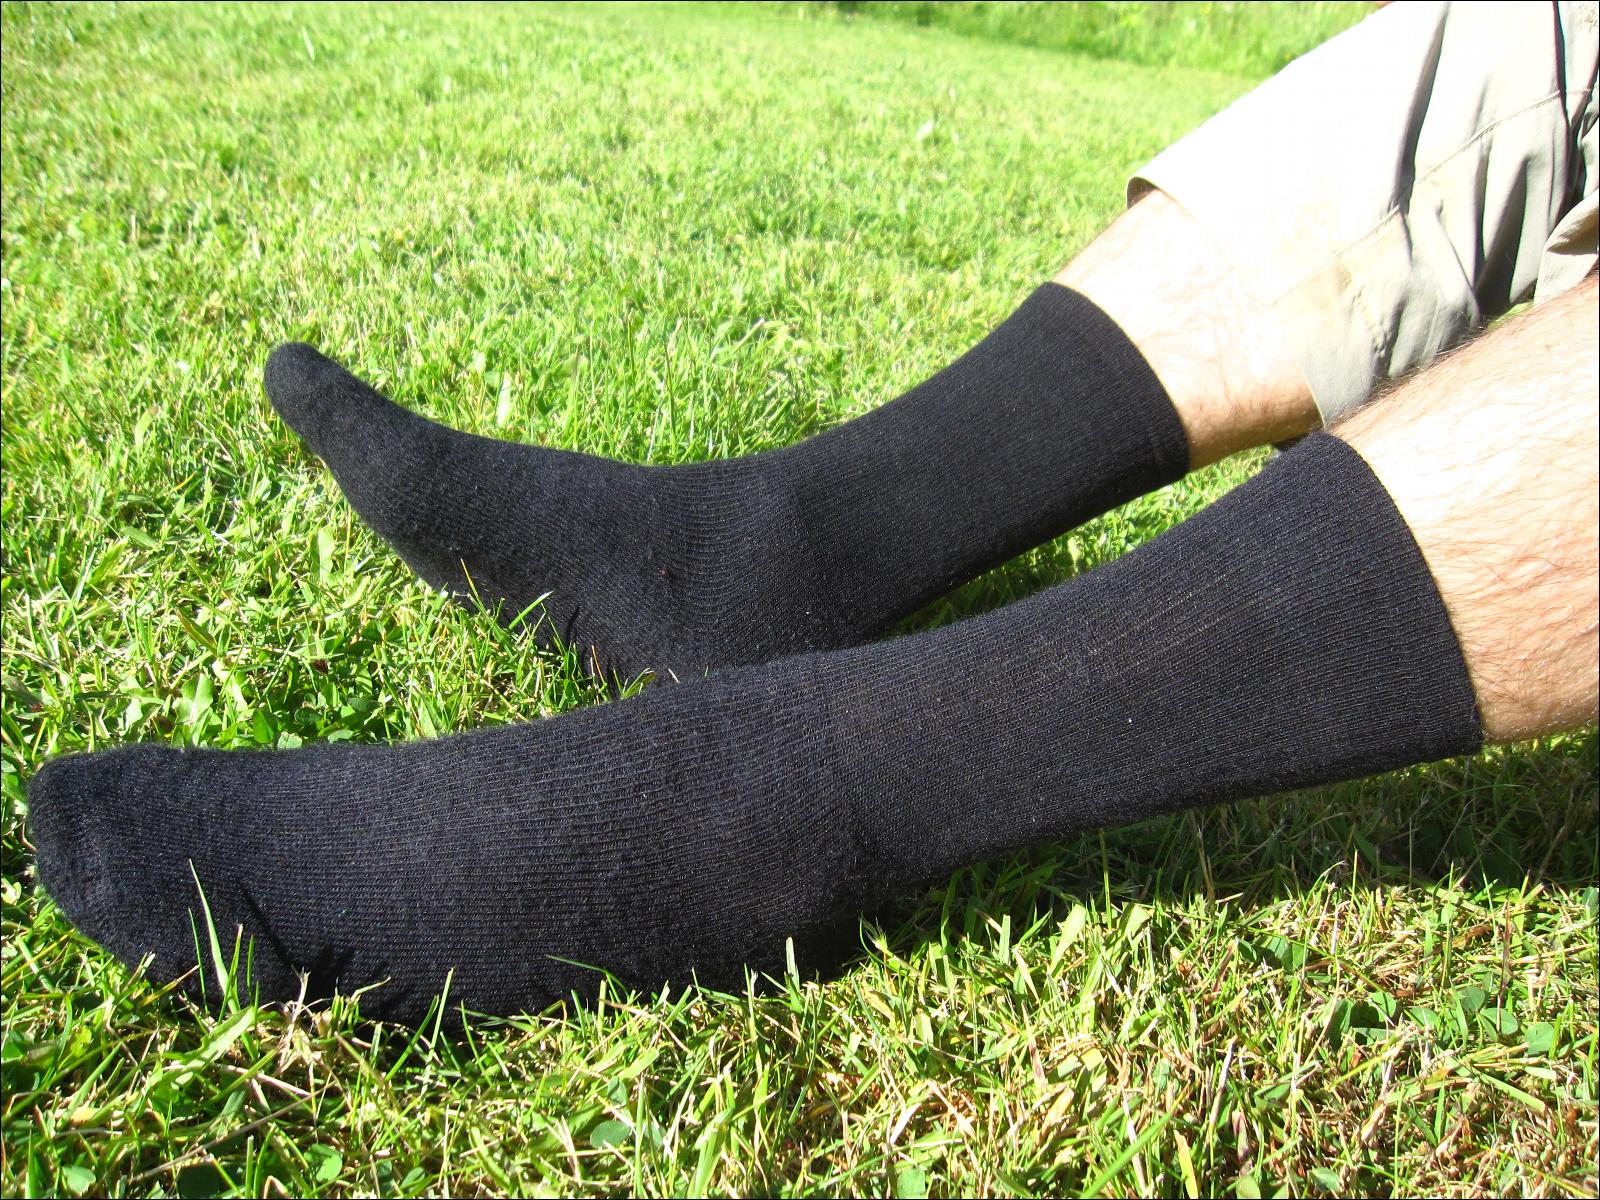 Woolpower - Chaussettes Ullfrotté mérinos socks 800 - Chaussettes